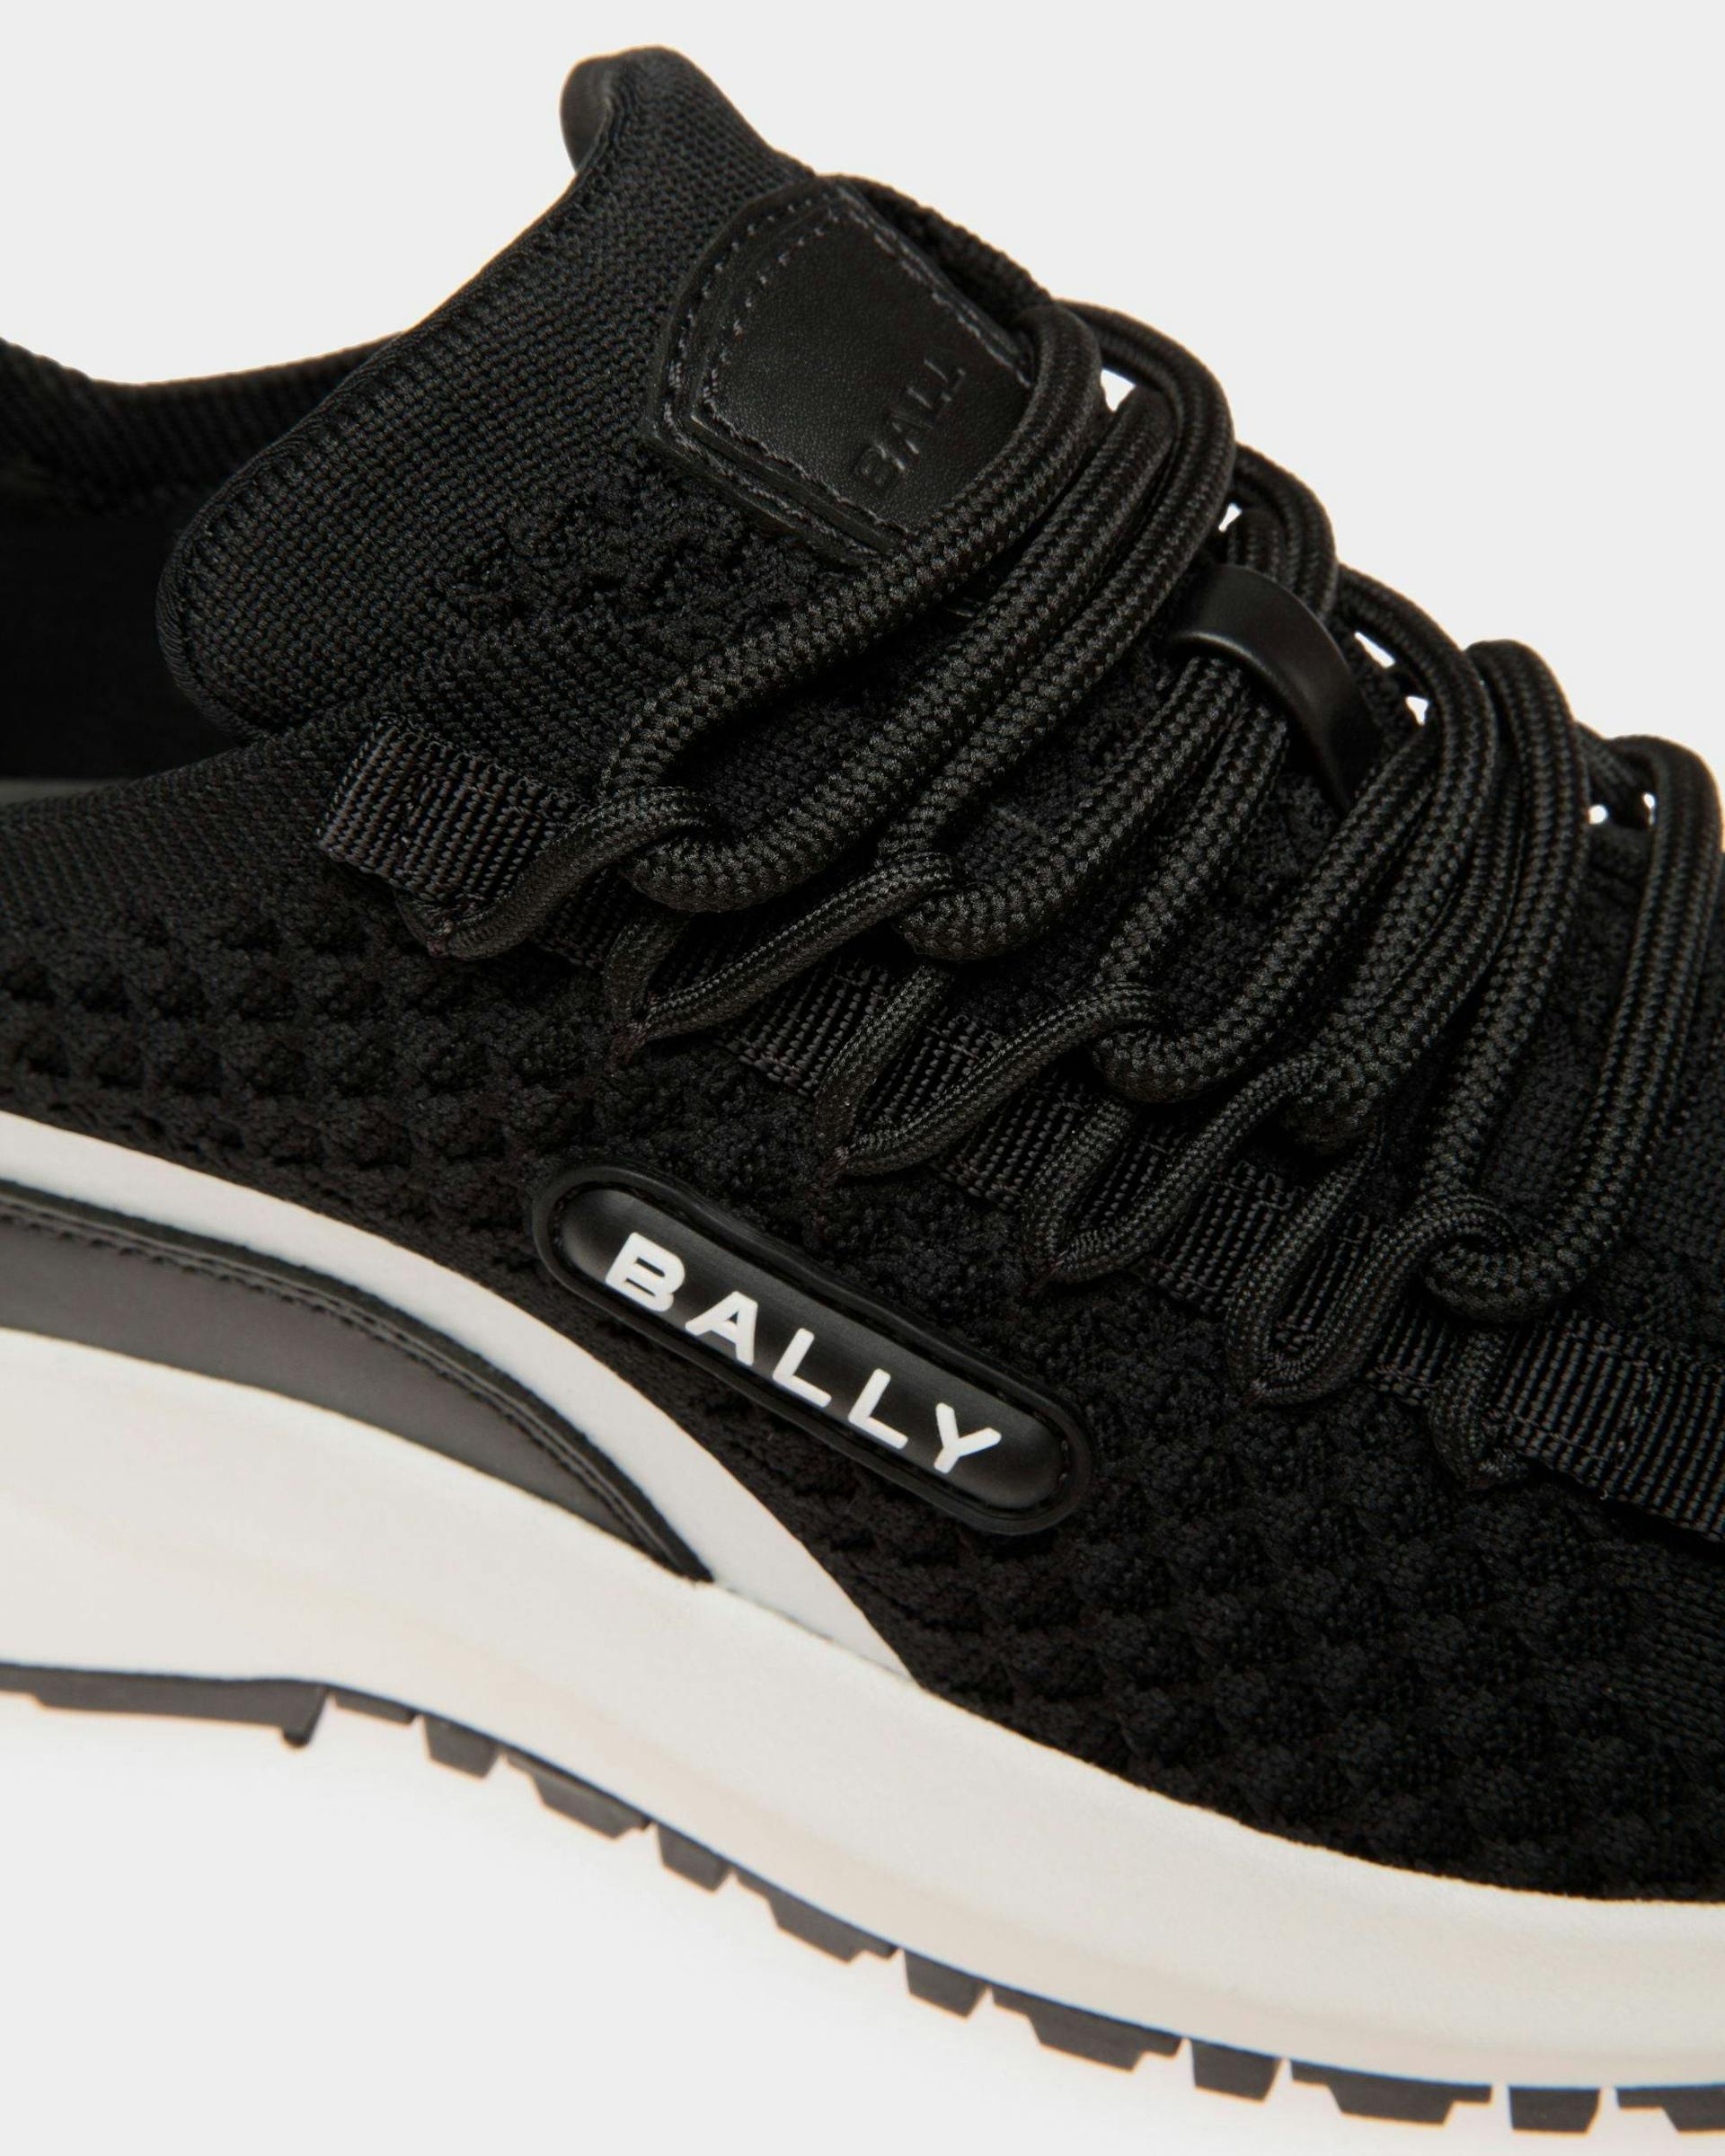 Women's Outline Sneaker in Black Knit | Bally | Still Life Detail